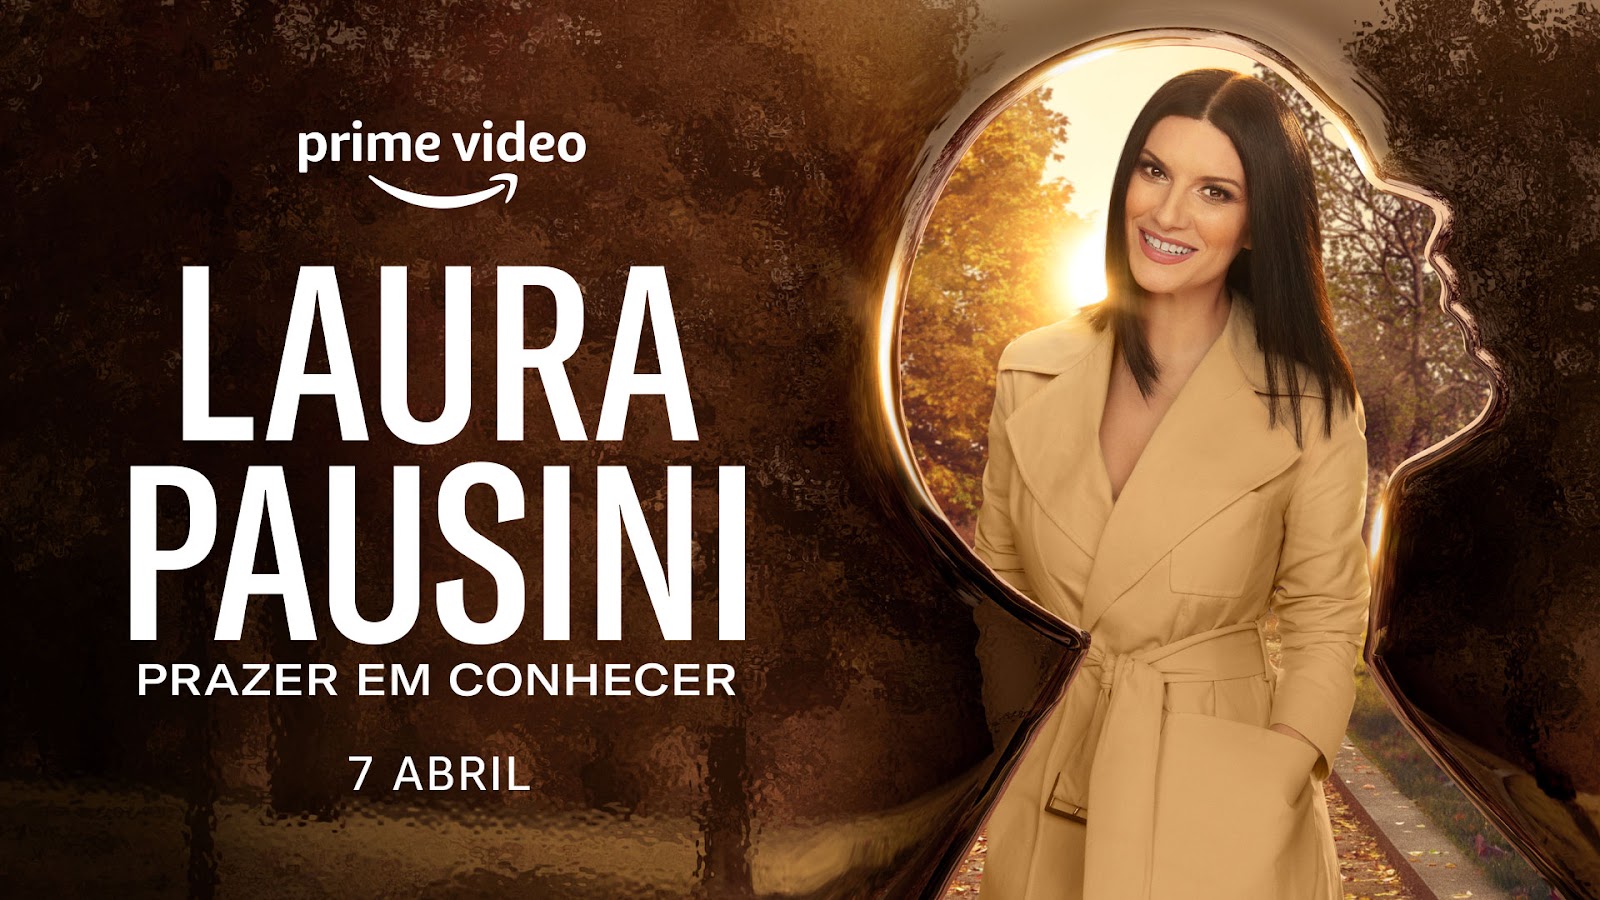 Prime Video revela o cartaz oficial do novo filme original italiano Laura Pausini – Prazer em Conhecer